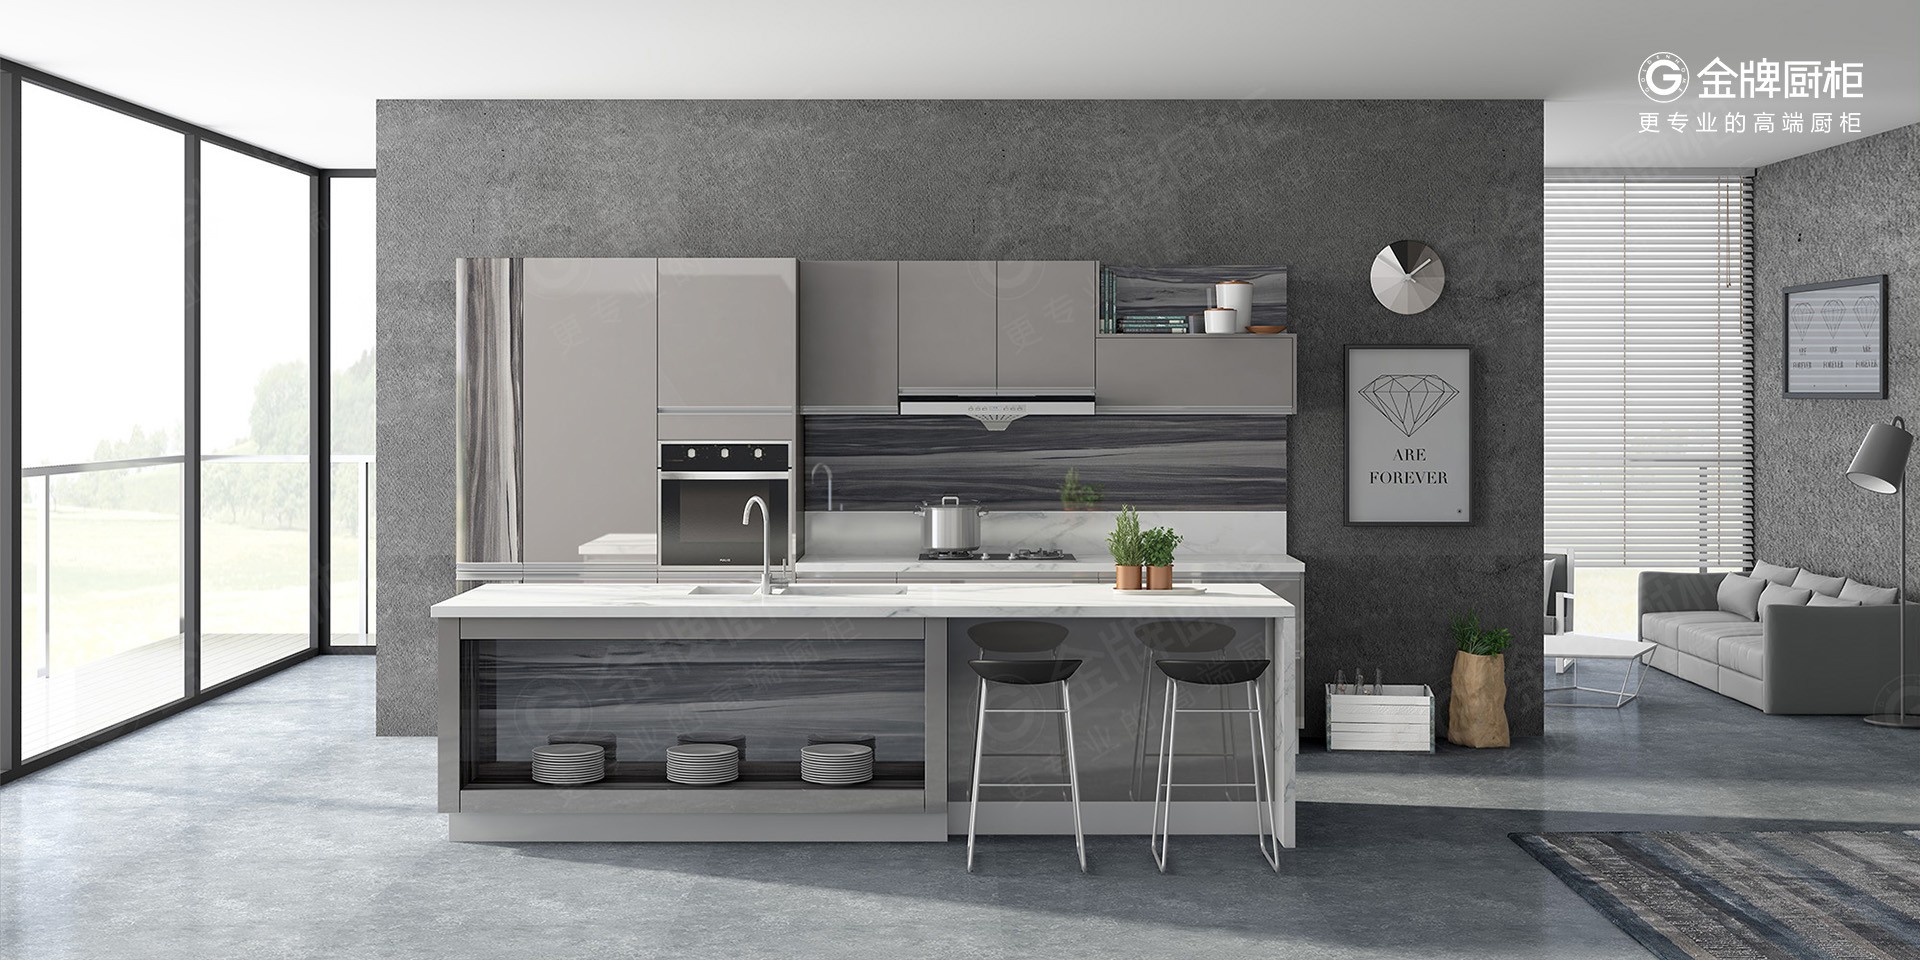 平板烤漆 - 现代简约风 - 金牌厨柜为更多家庭定制高品质家居，让每个人体验回家的美好。